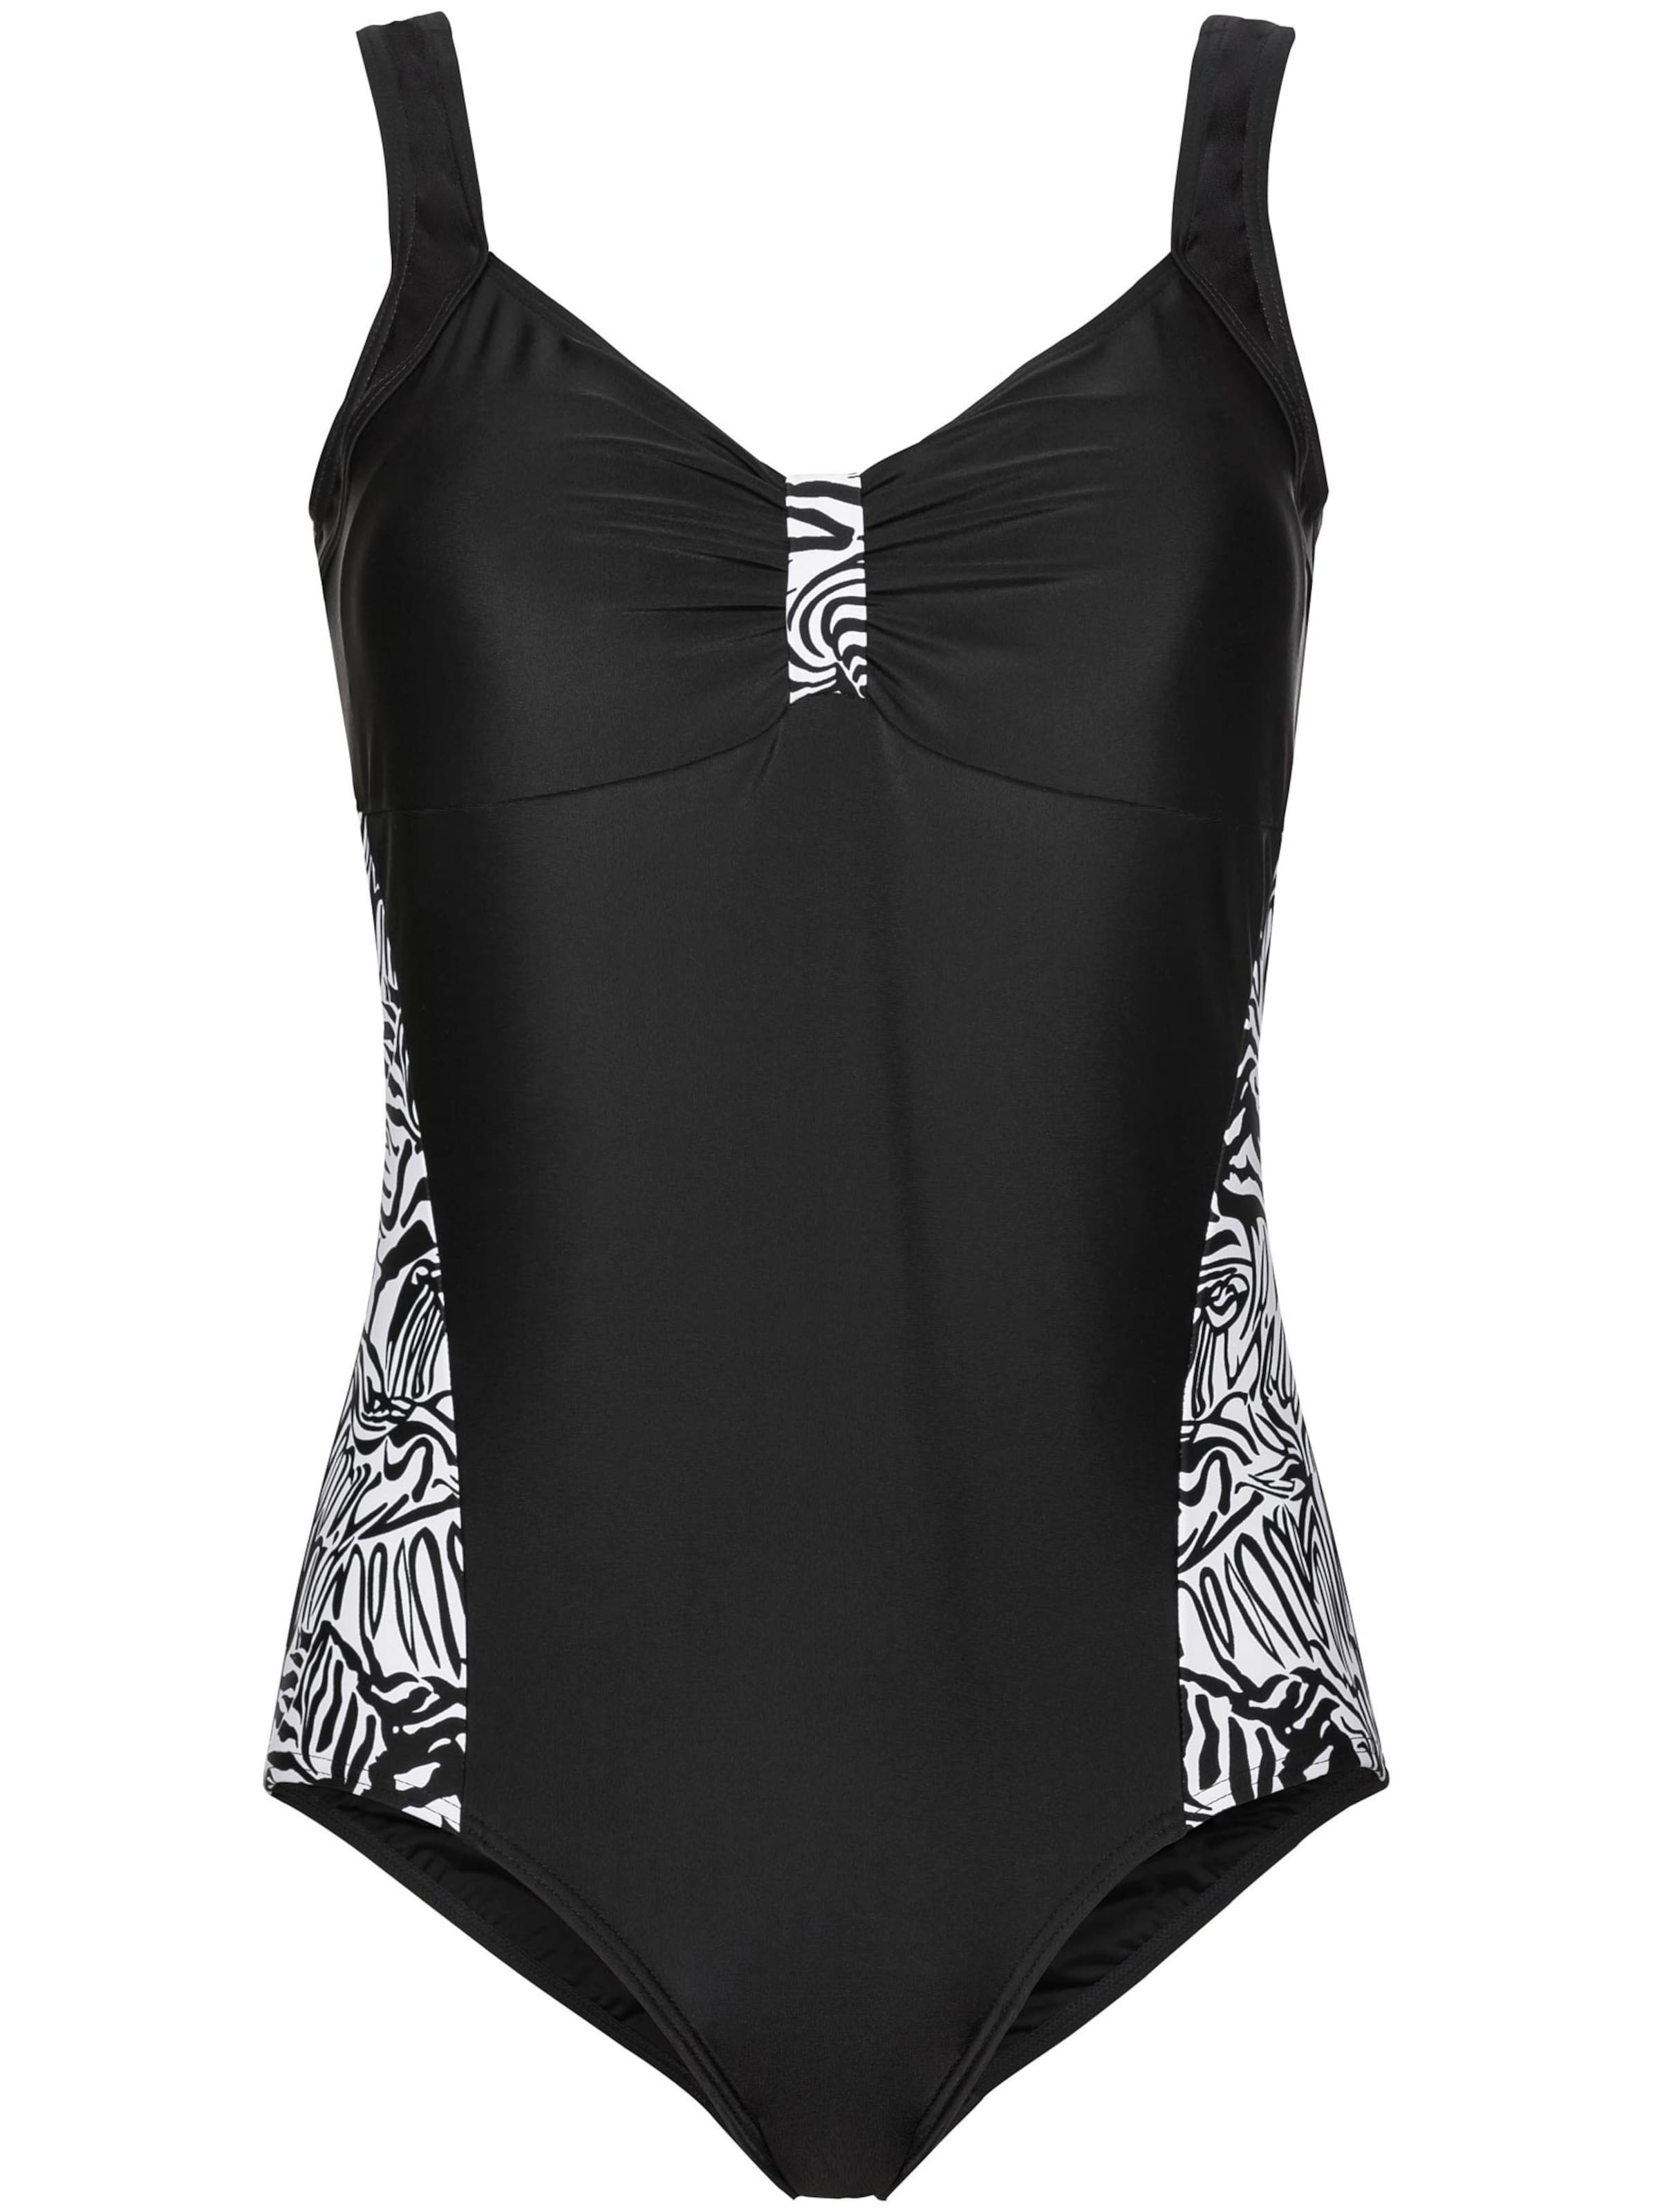 Witt Weiden Damen Badeanzug schwarz weiß bedruckt  - Onlineshop Witt Weiden